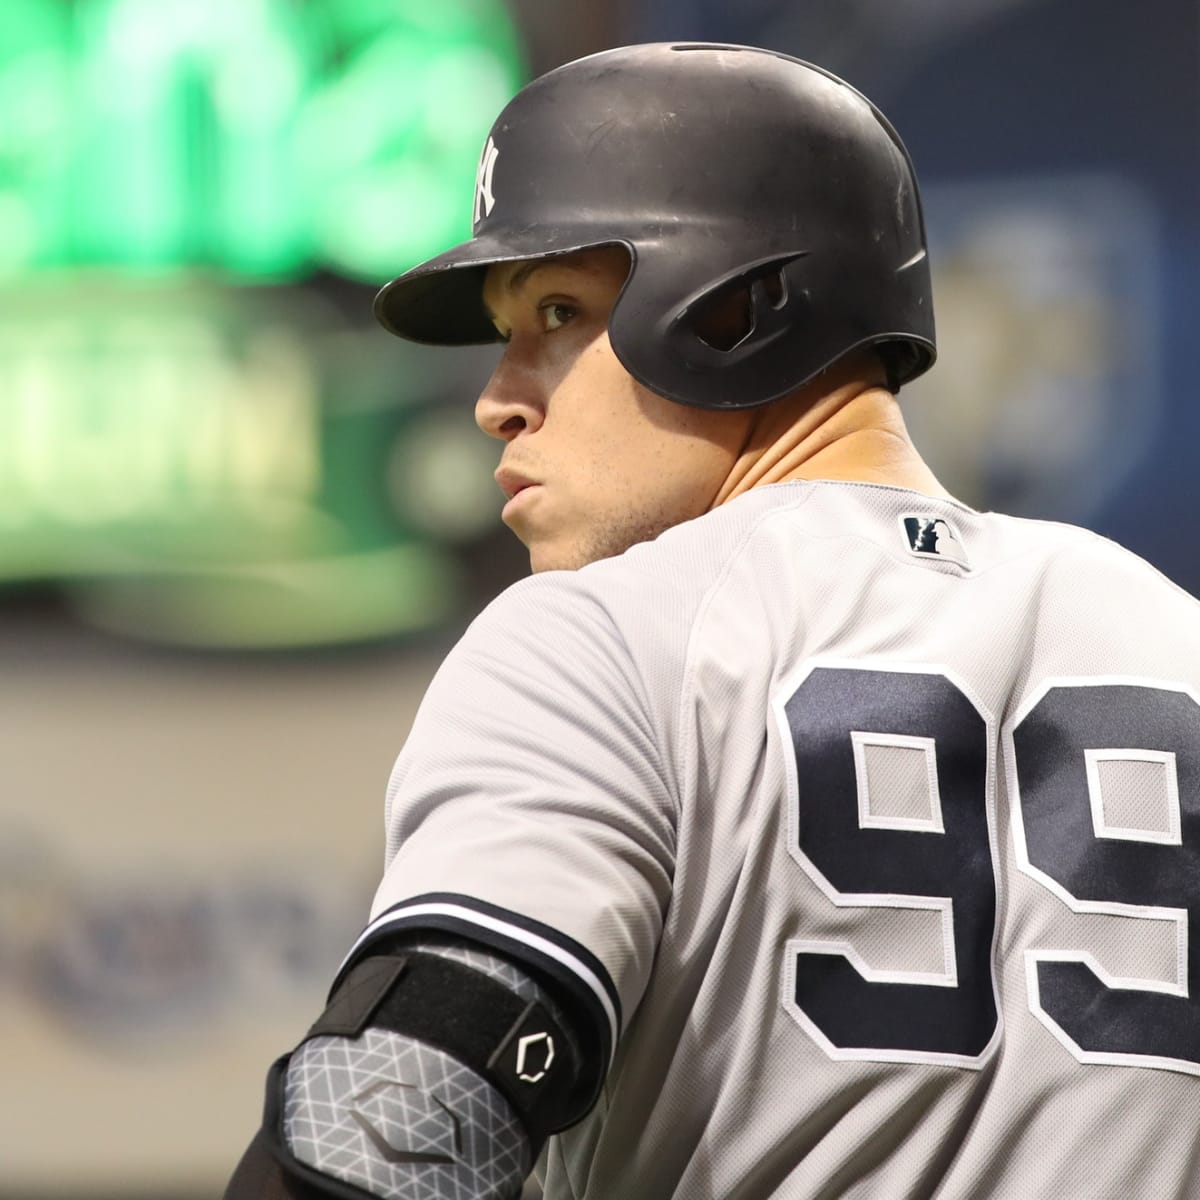 Yankees' Aaron Judge in Tampa for sim games; Weekend return not